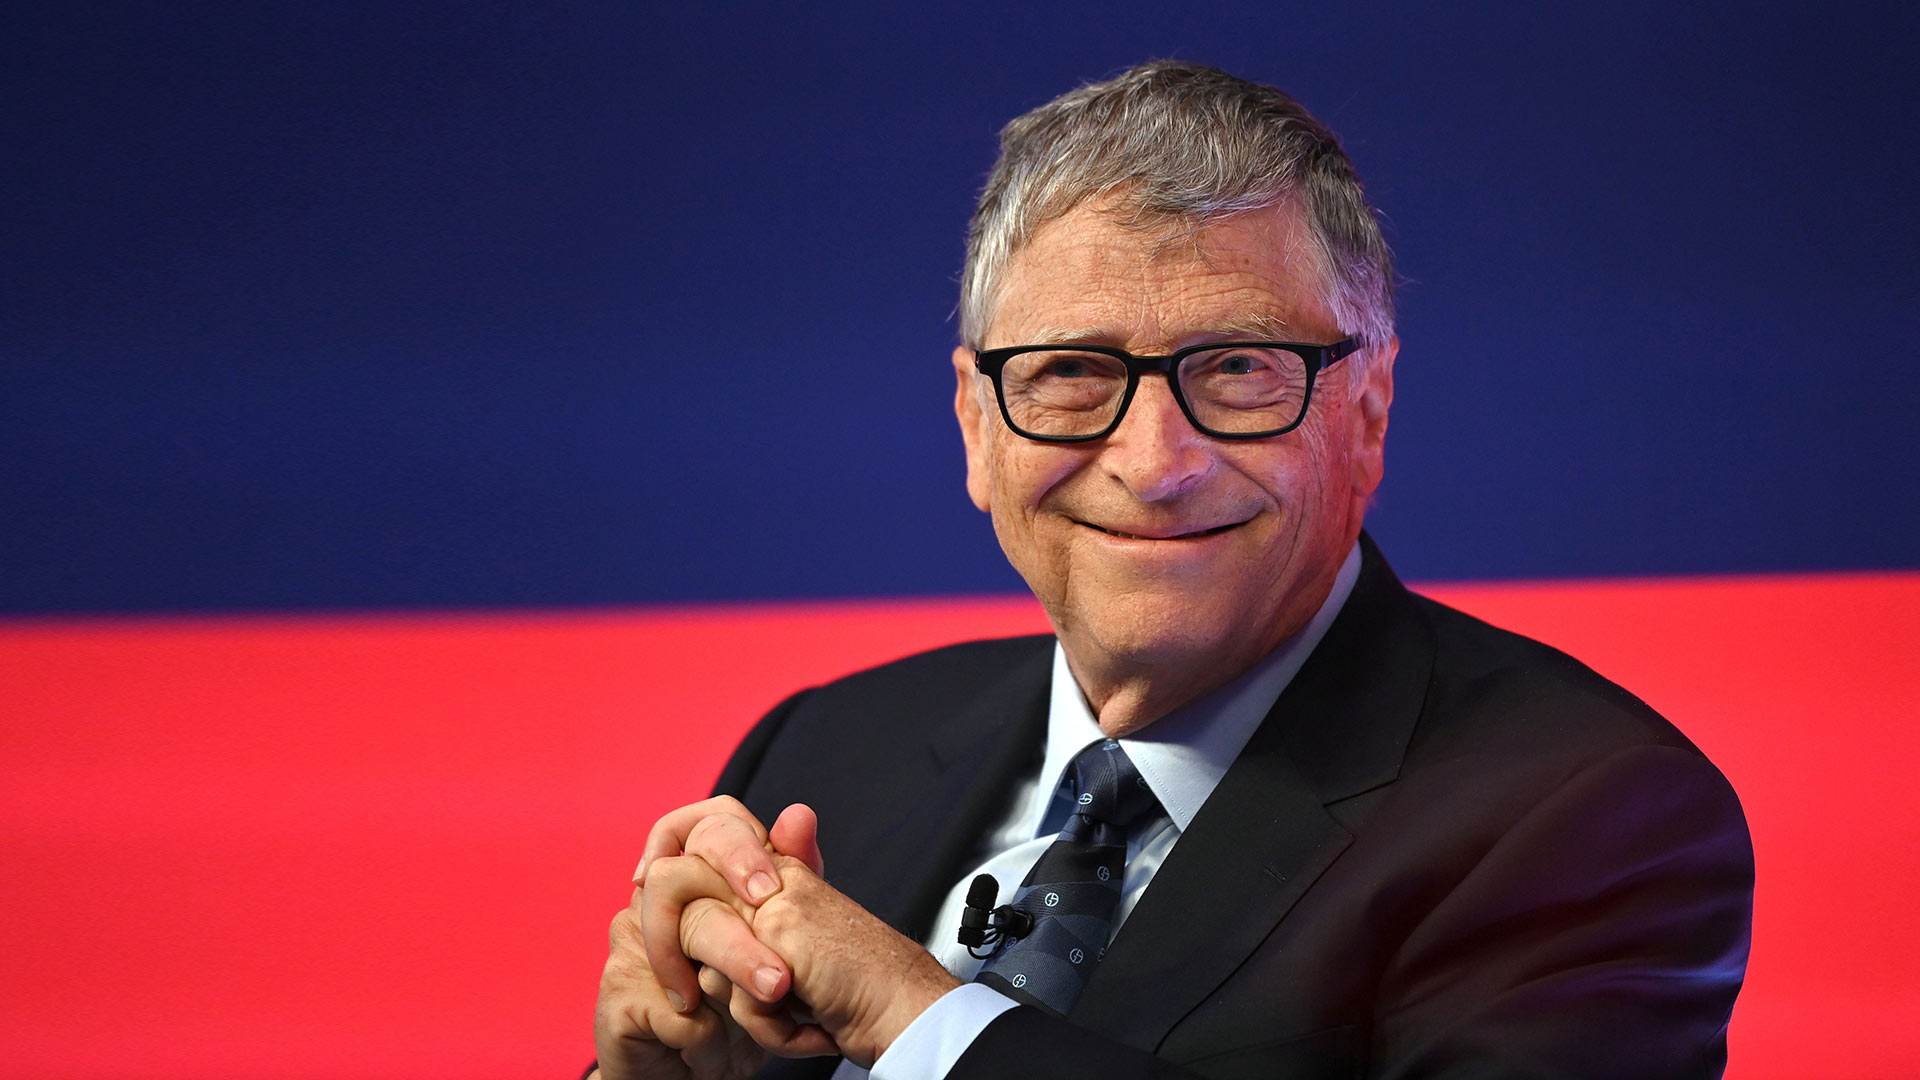 Ist uns Bill Gates mit dieser Aktie allen einen Schritt voraus?  (Foto: Leon Neal/Pool via Reuters)